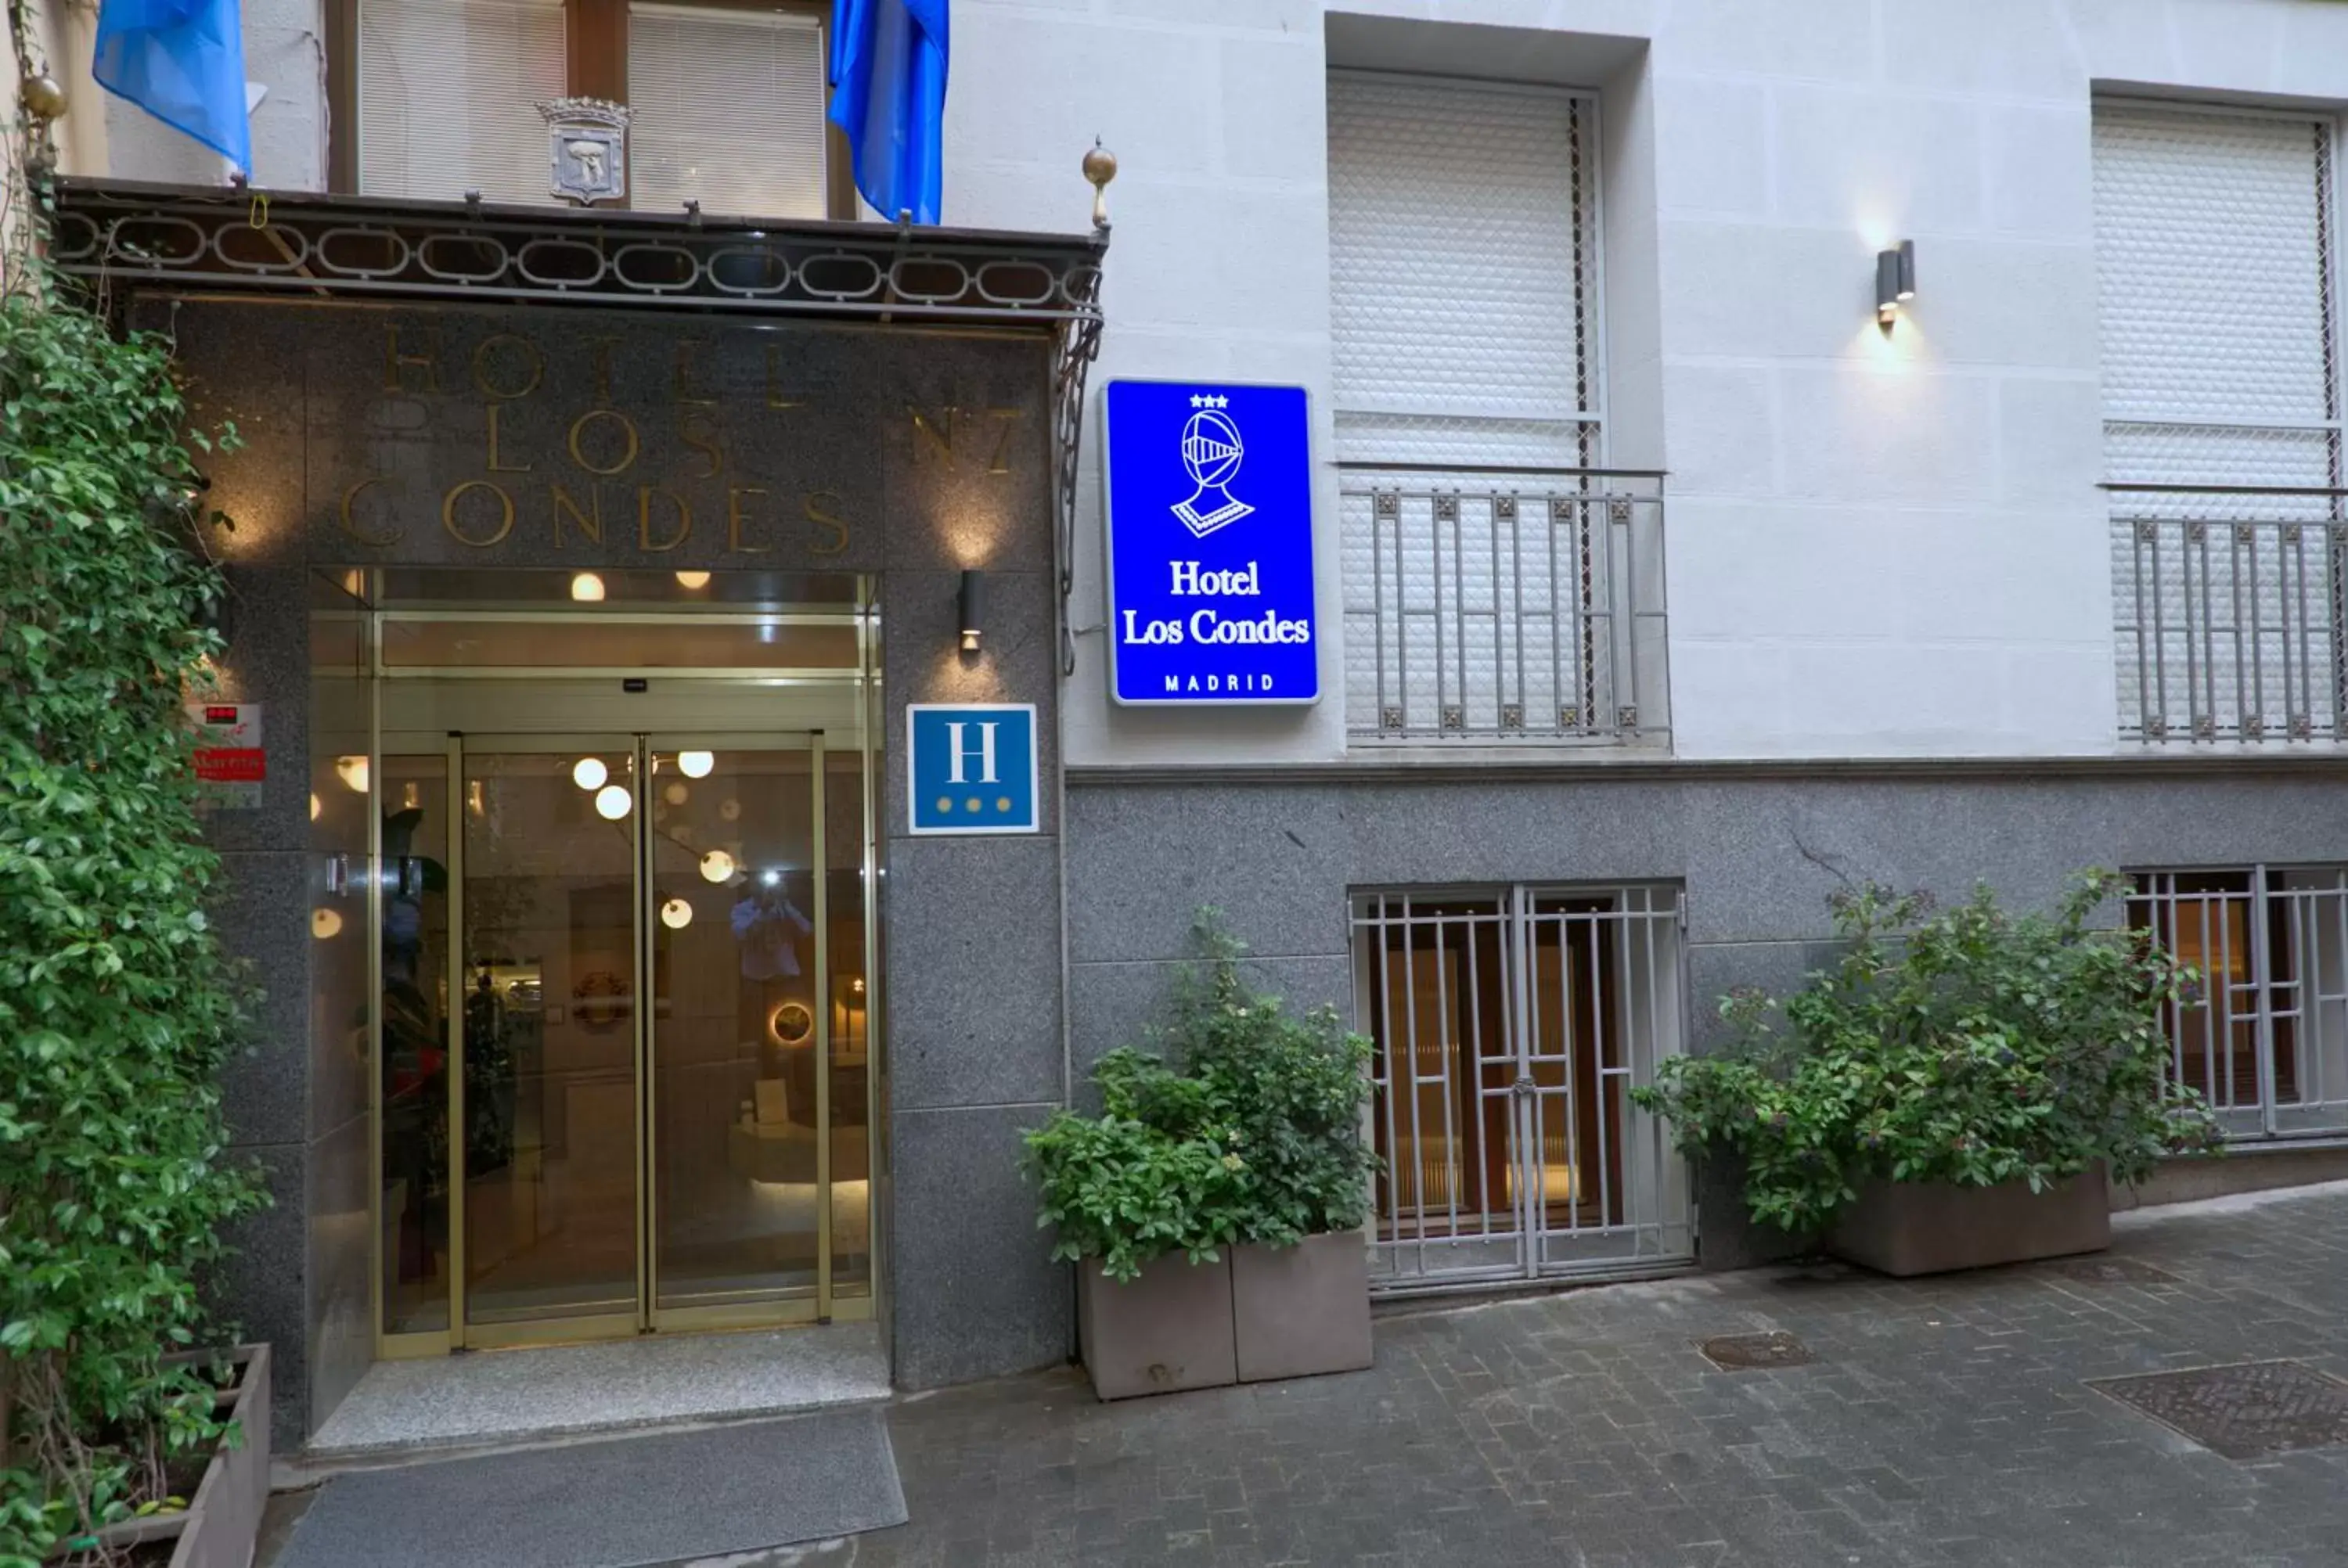 Property building, Facade/Entrance in Hotel Los Condes